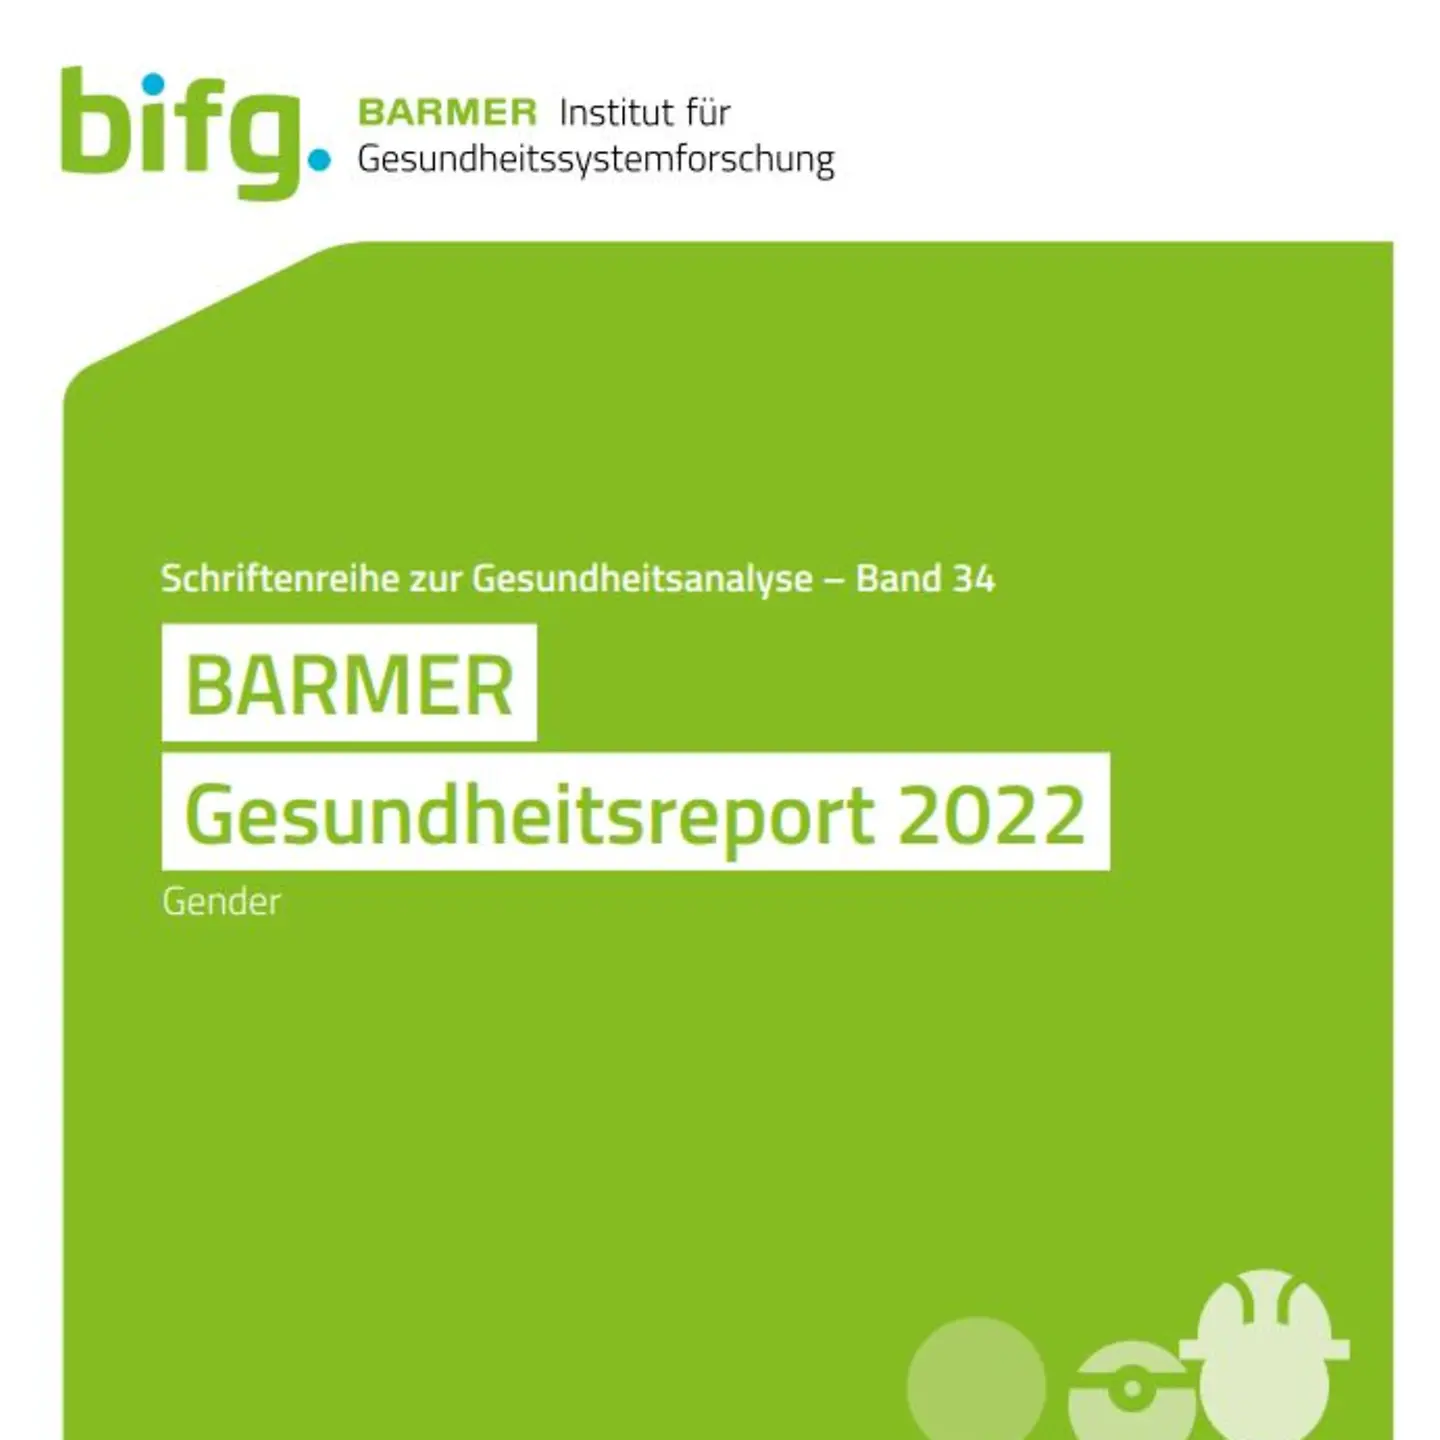 Bild_Cover_Gesundheitsreport 2022-Gender